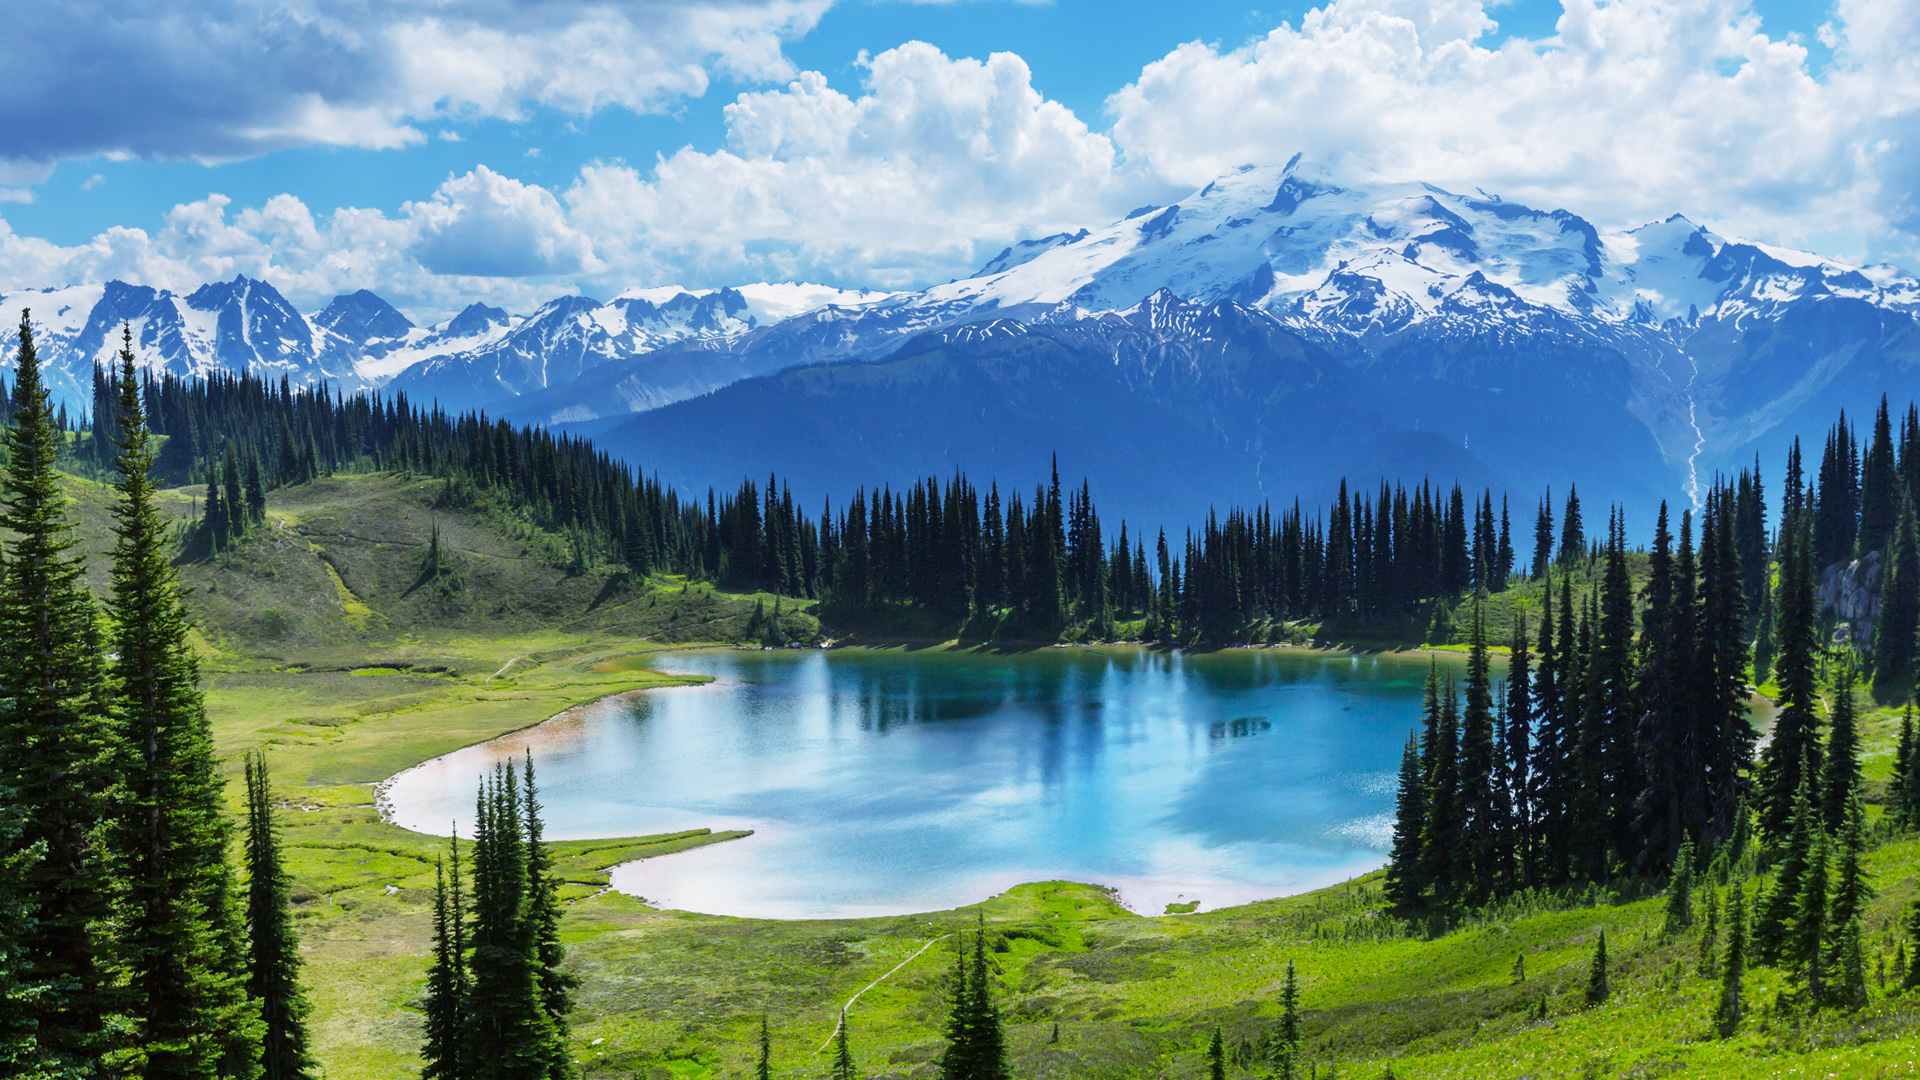 加拿大,冰碛湖,班芙国家公园,湖泊,森林,风景桌面壁纸